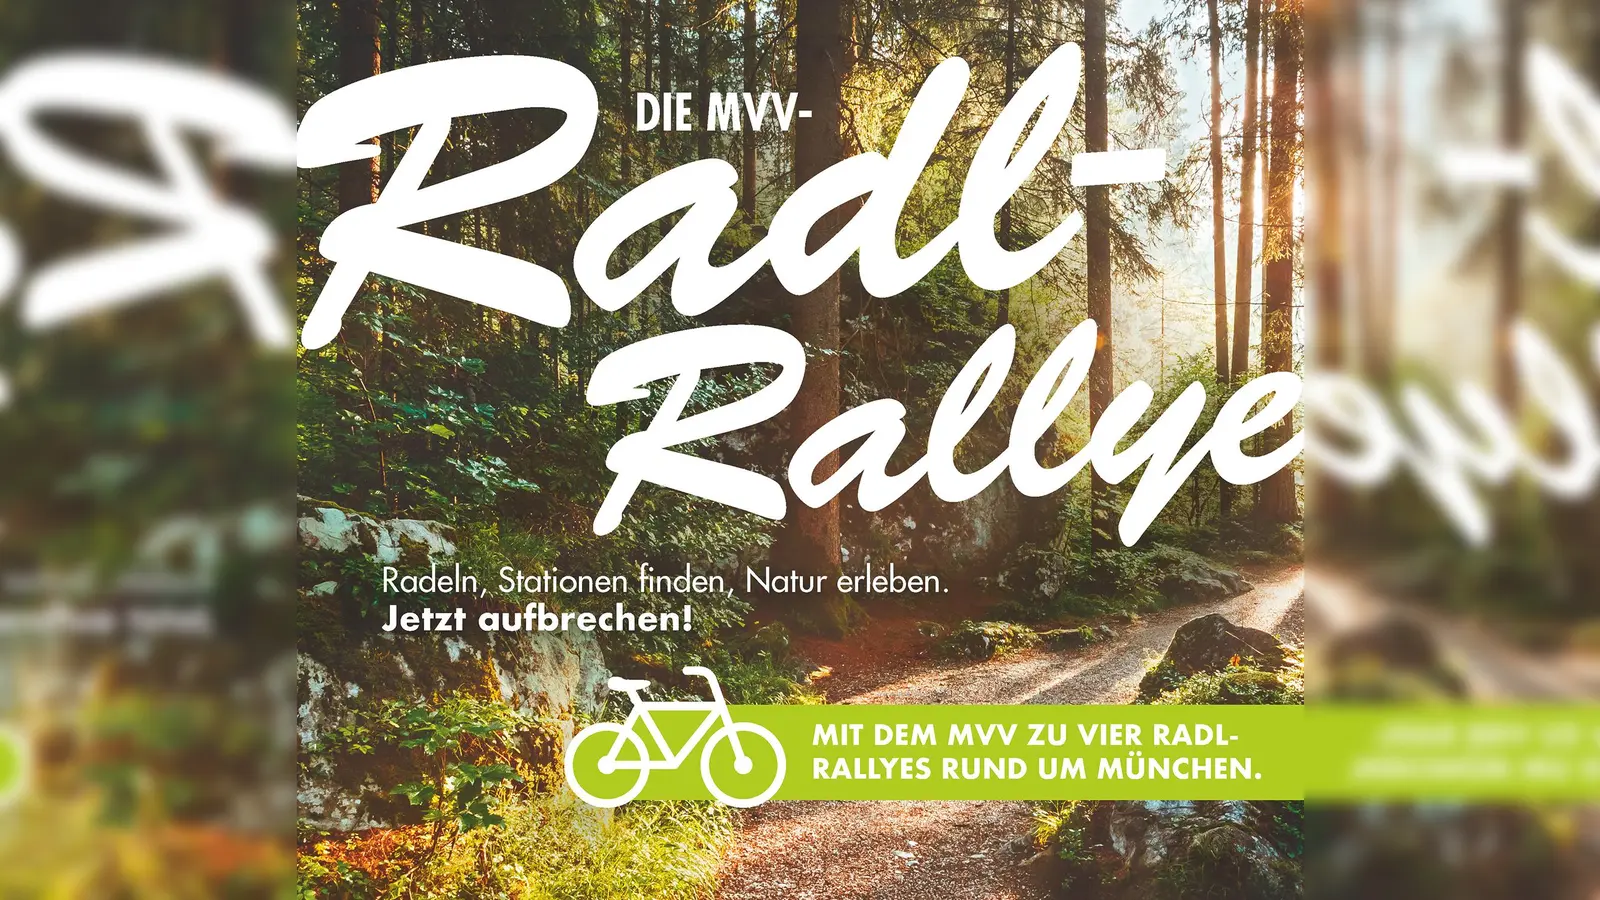 Die Radlrallyes können seit 1. September unter www.mvv-radlrallye.de direkt auf dem Smartphone gelöst werden. (Foto: mvv)